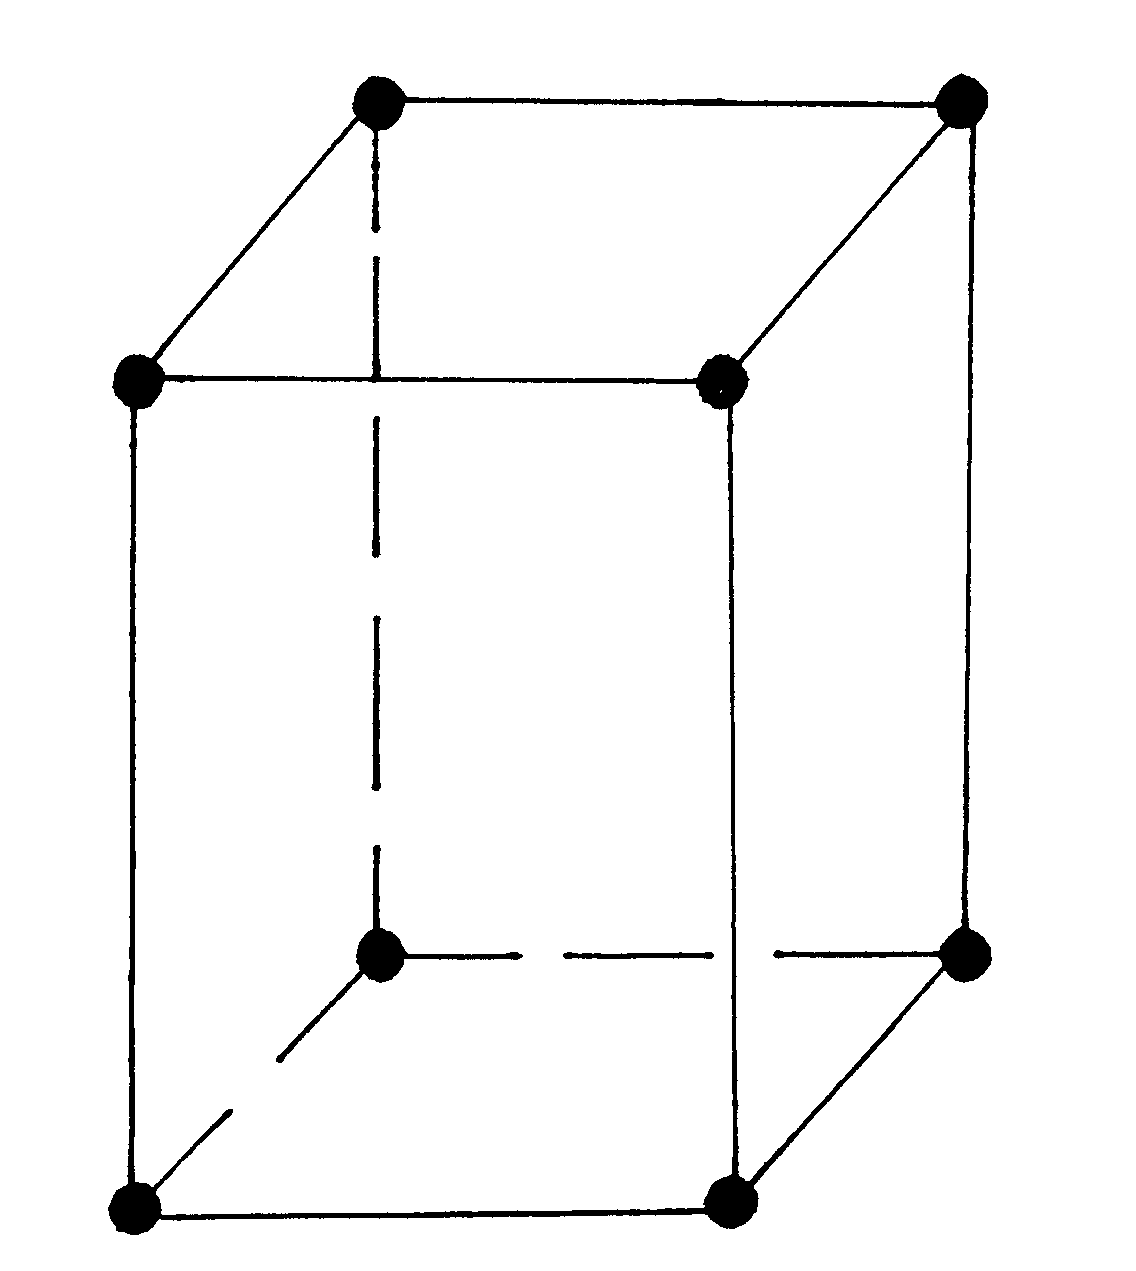 Ромбическая кристаллическая. Тетрагональная кристаллическая решетка. Тетрагональная структура решетки. Тетрагональная объемно центрированная решетка. Тригональная структура кристаллической решетки.